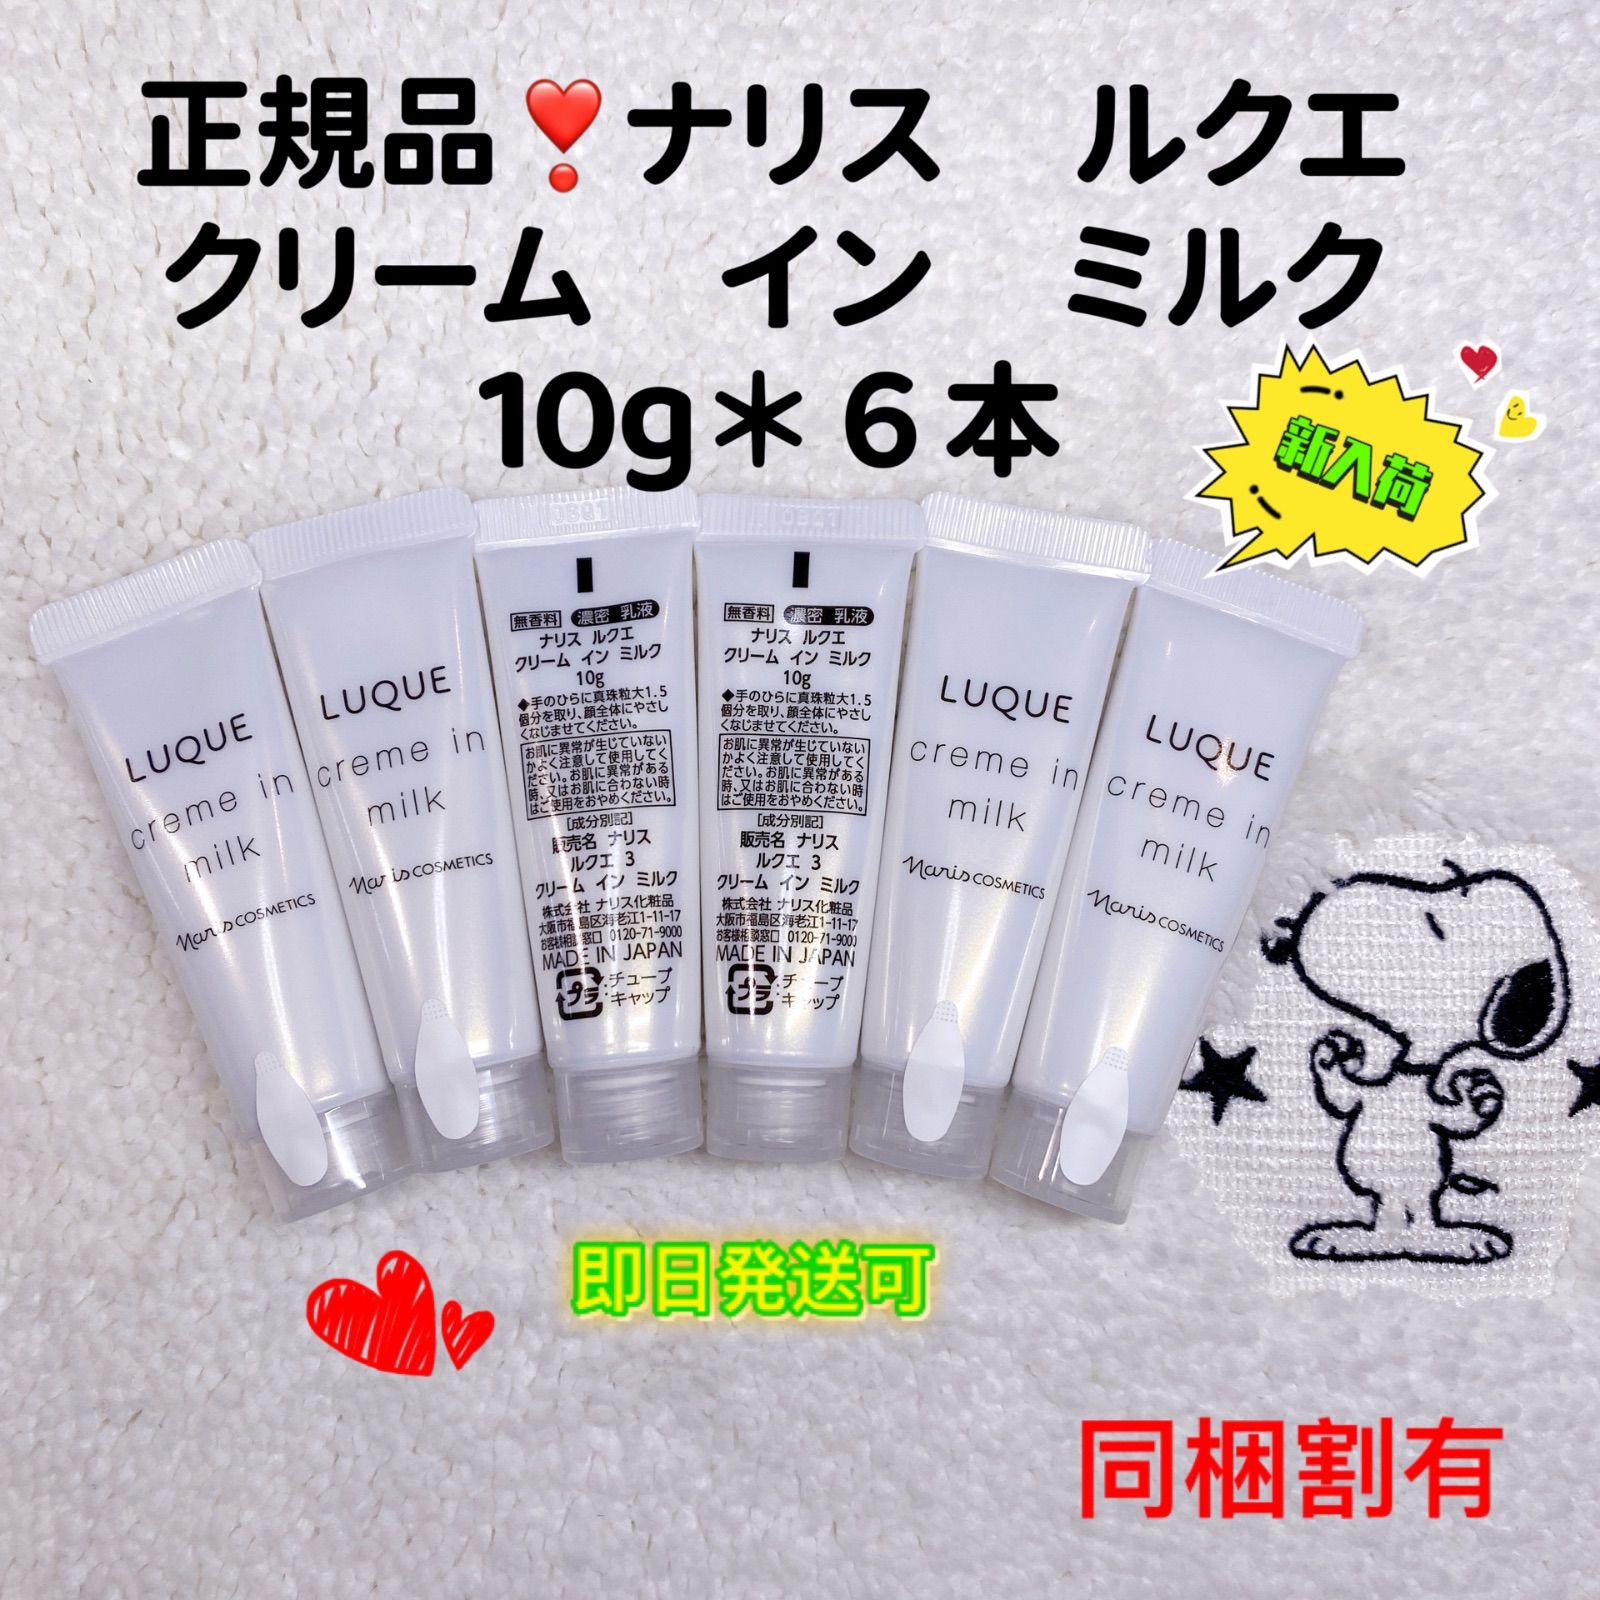 ○日本正規品○ ナリス化粧品新ルクエ クリームインミルク 濃密乳液